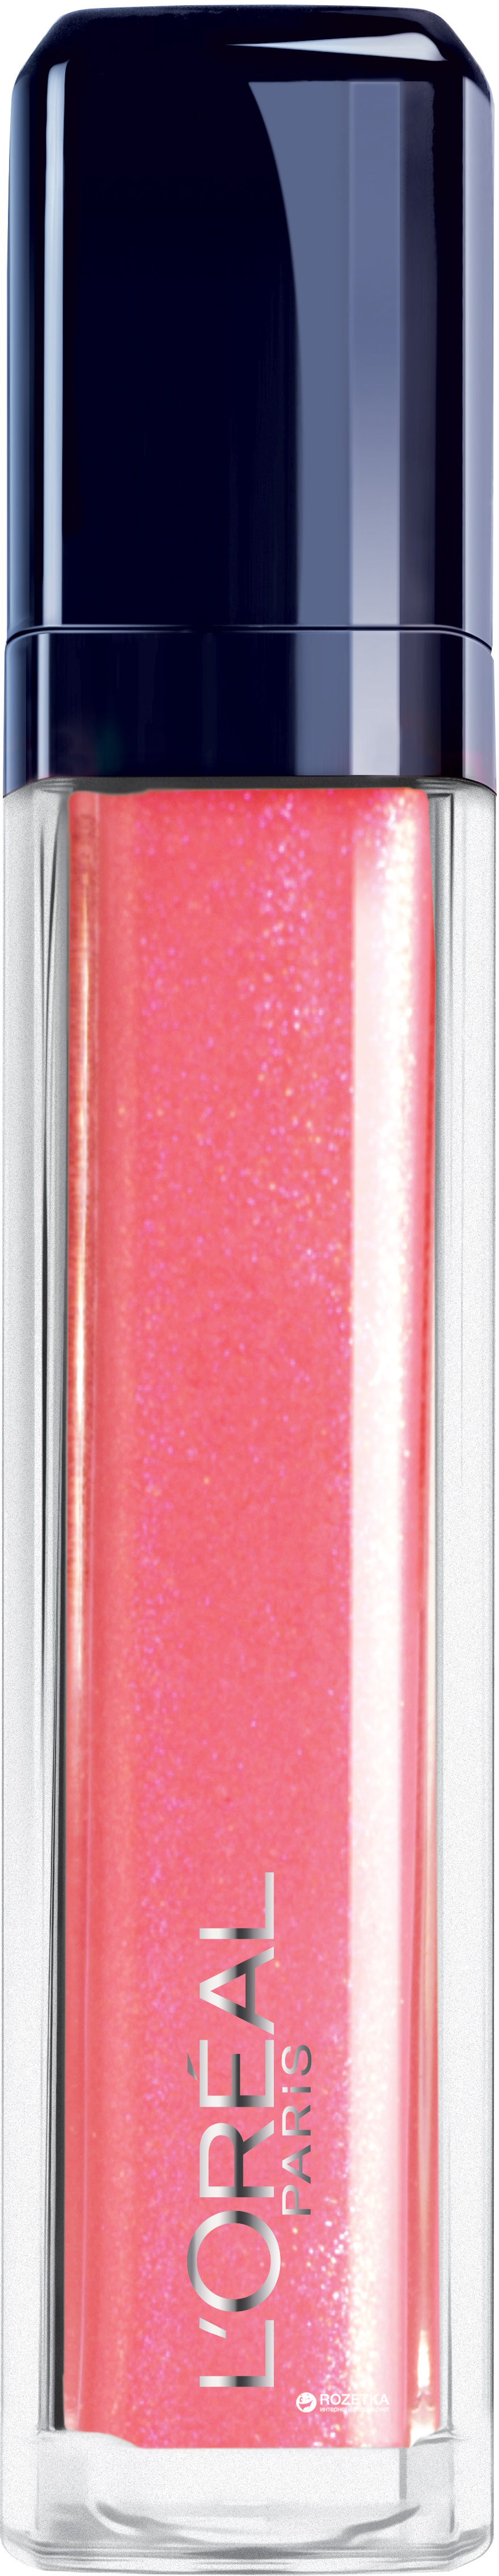 Акция на Блеск для губ L'Oreal Glam Shine 206 сияющий (3600522996552) от Rozetka UA